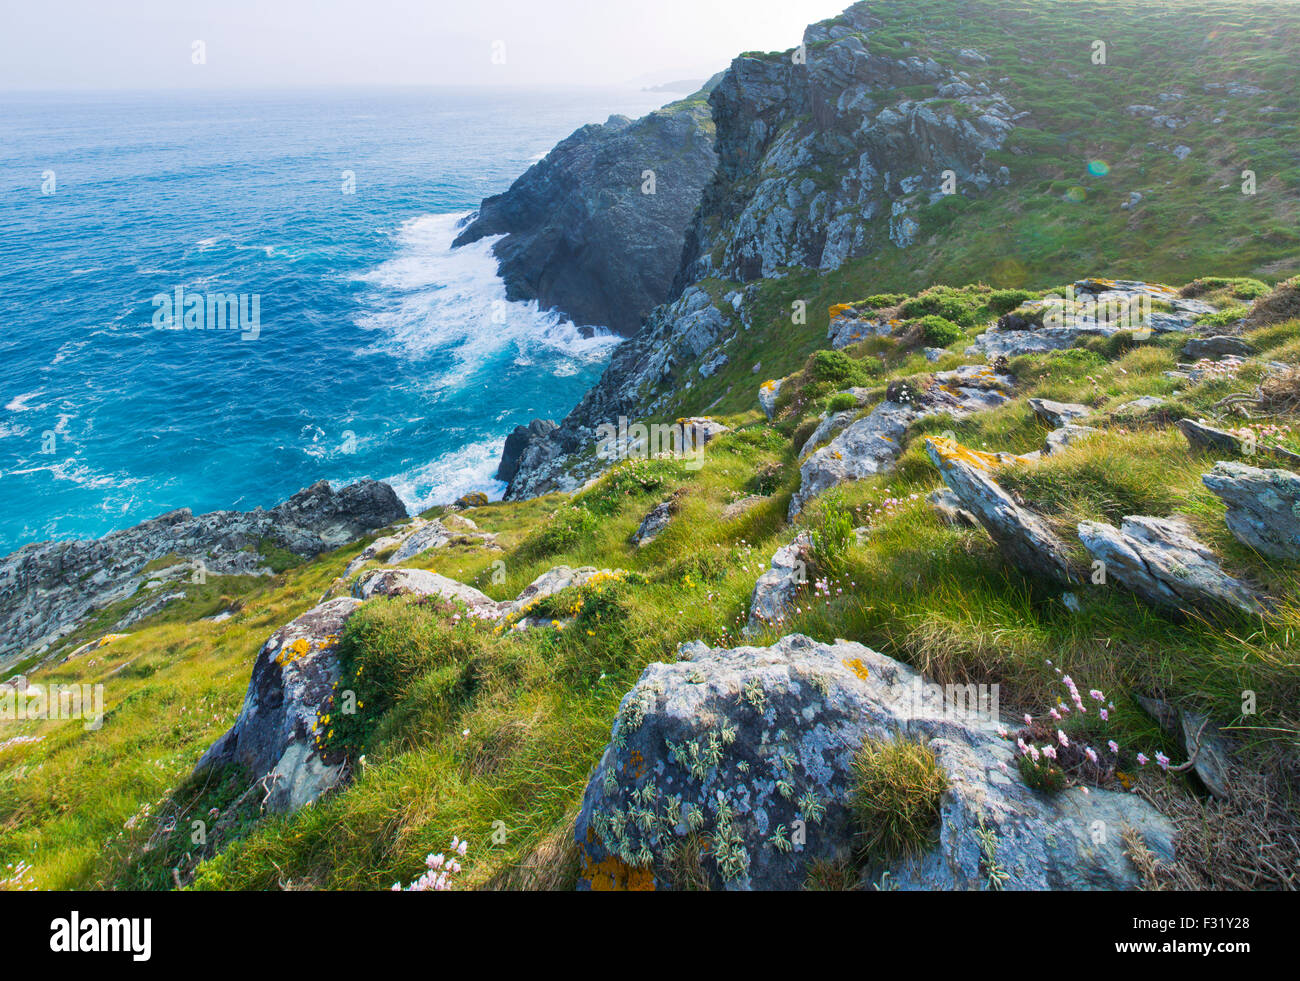 Immagine panoramica dei promontori rocciosi e costa della Galizia nel nord ovest della Spagna Foto Stock